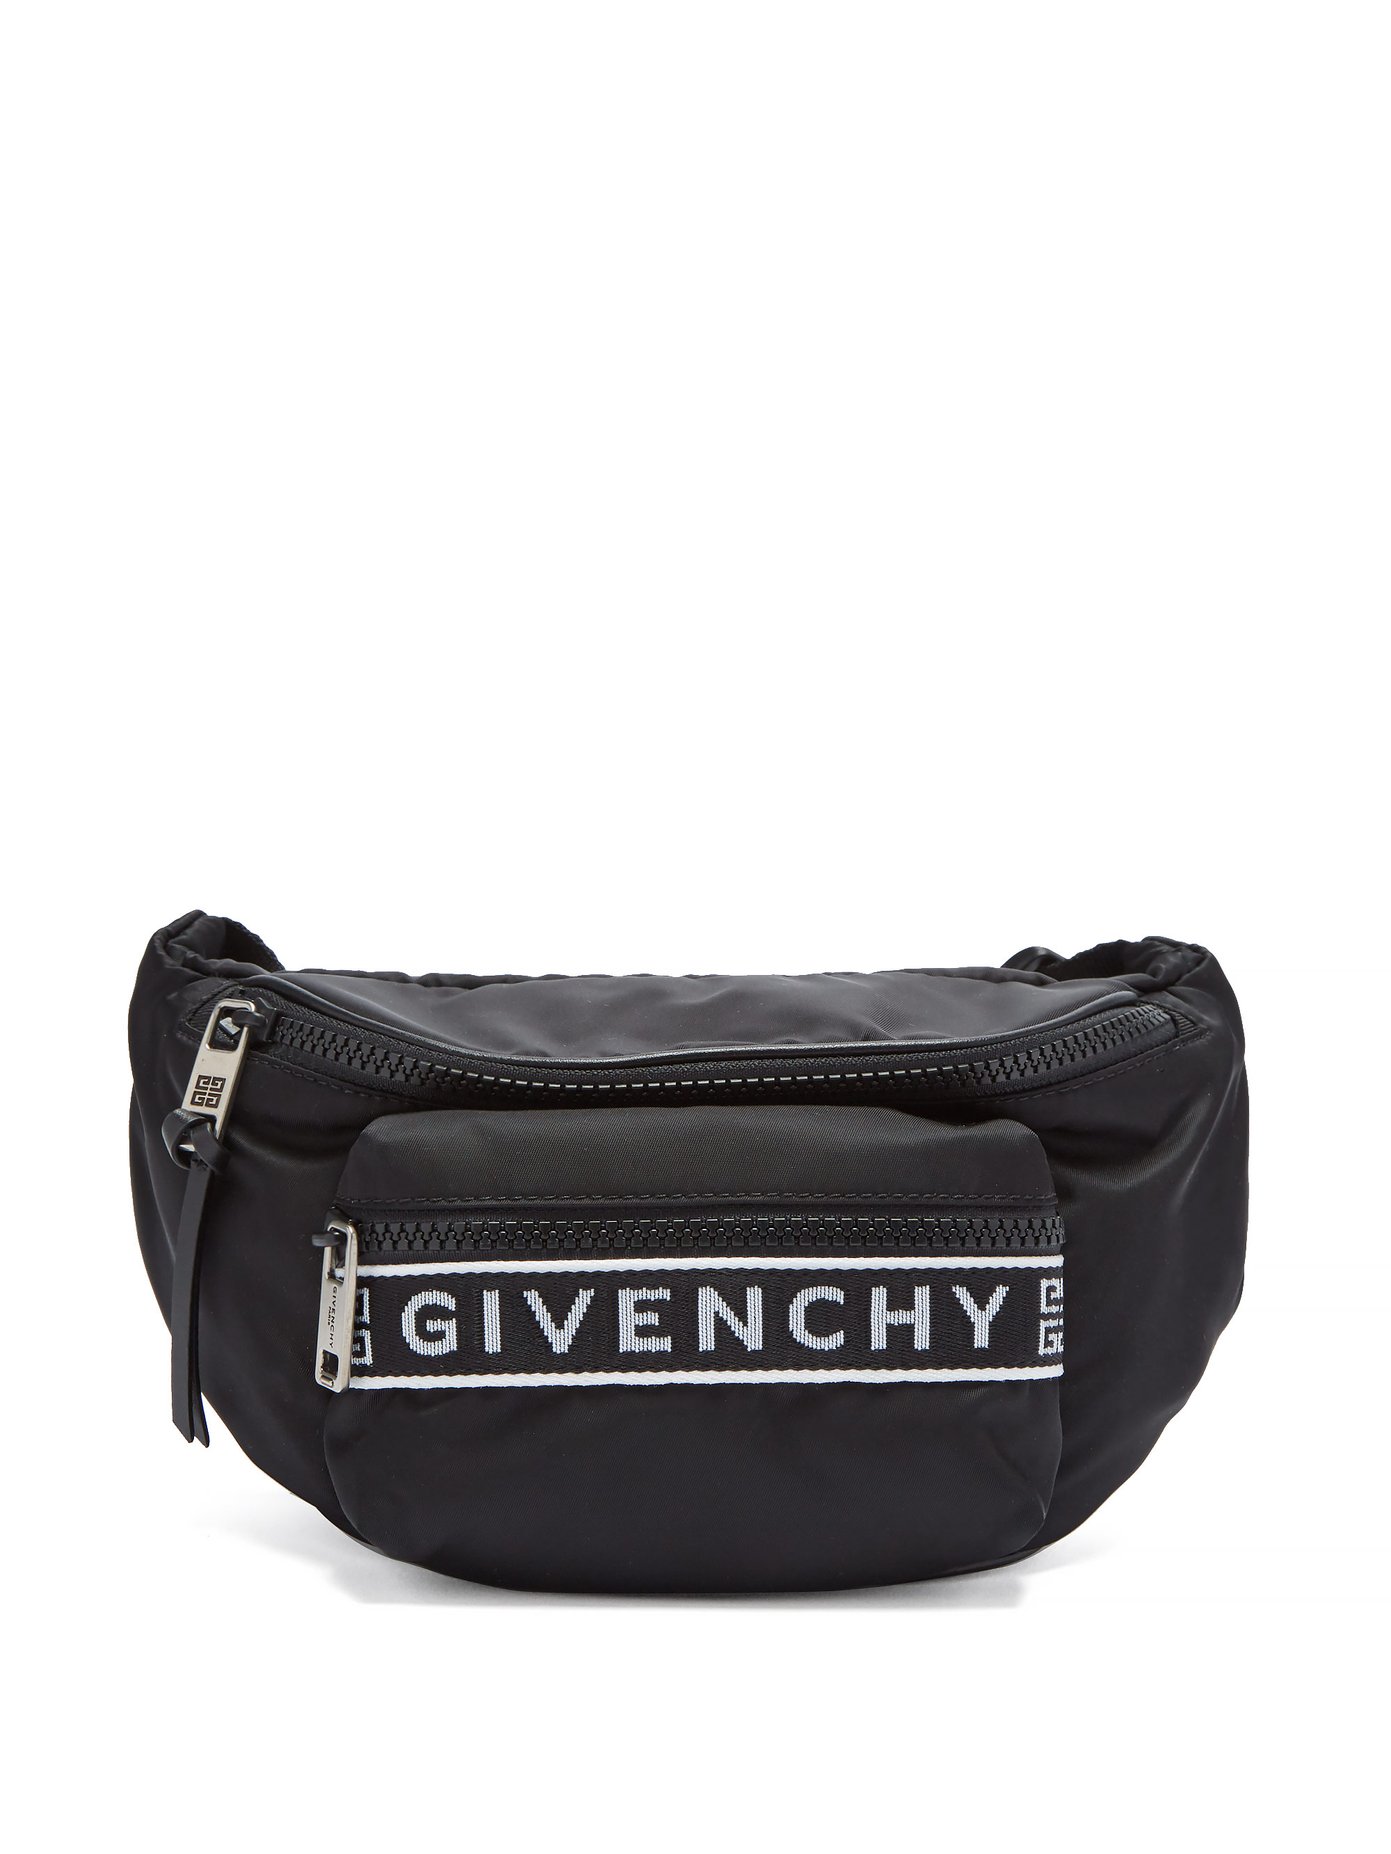 givenchy logo belt bag